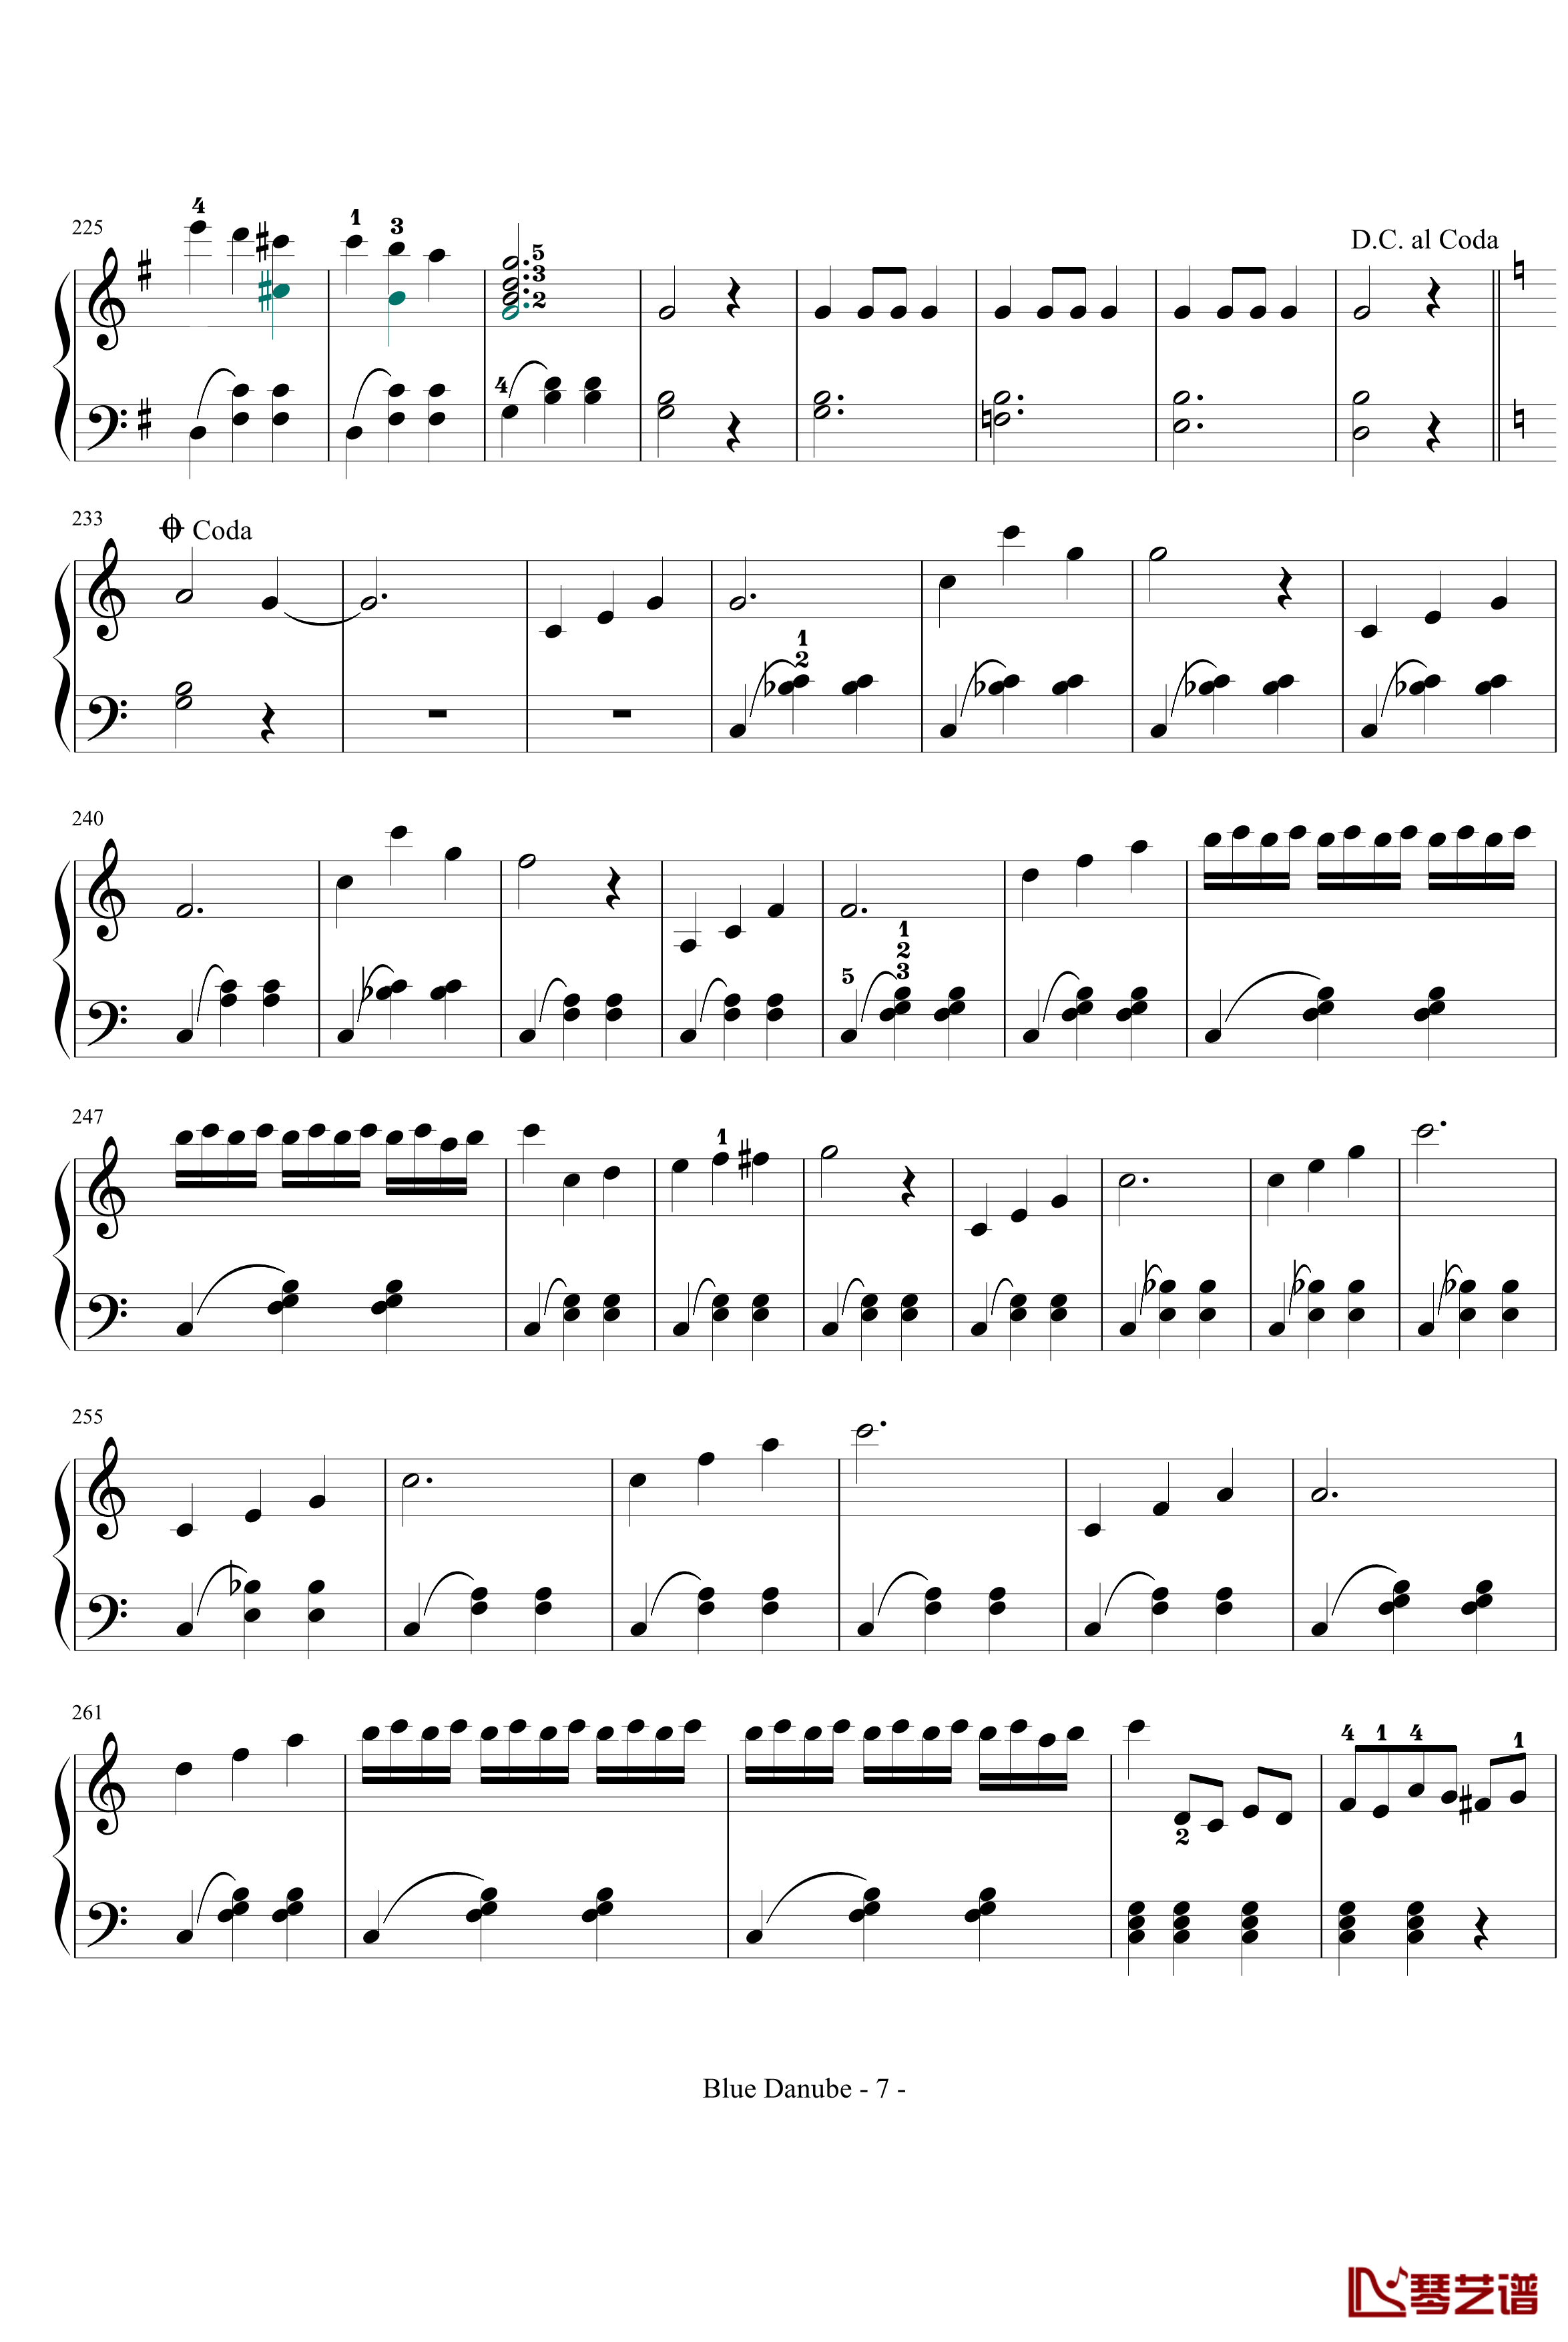 蓝色多瑙河钢琴谱-完整-带指法简化-约翰·斯特劳斯7